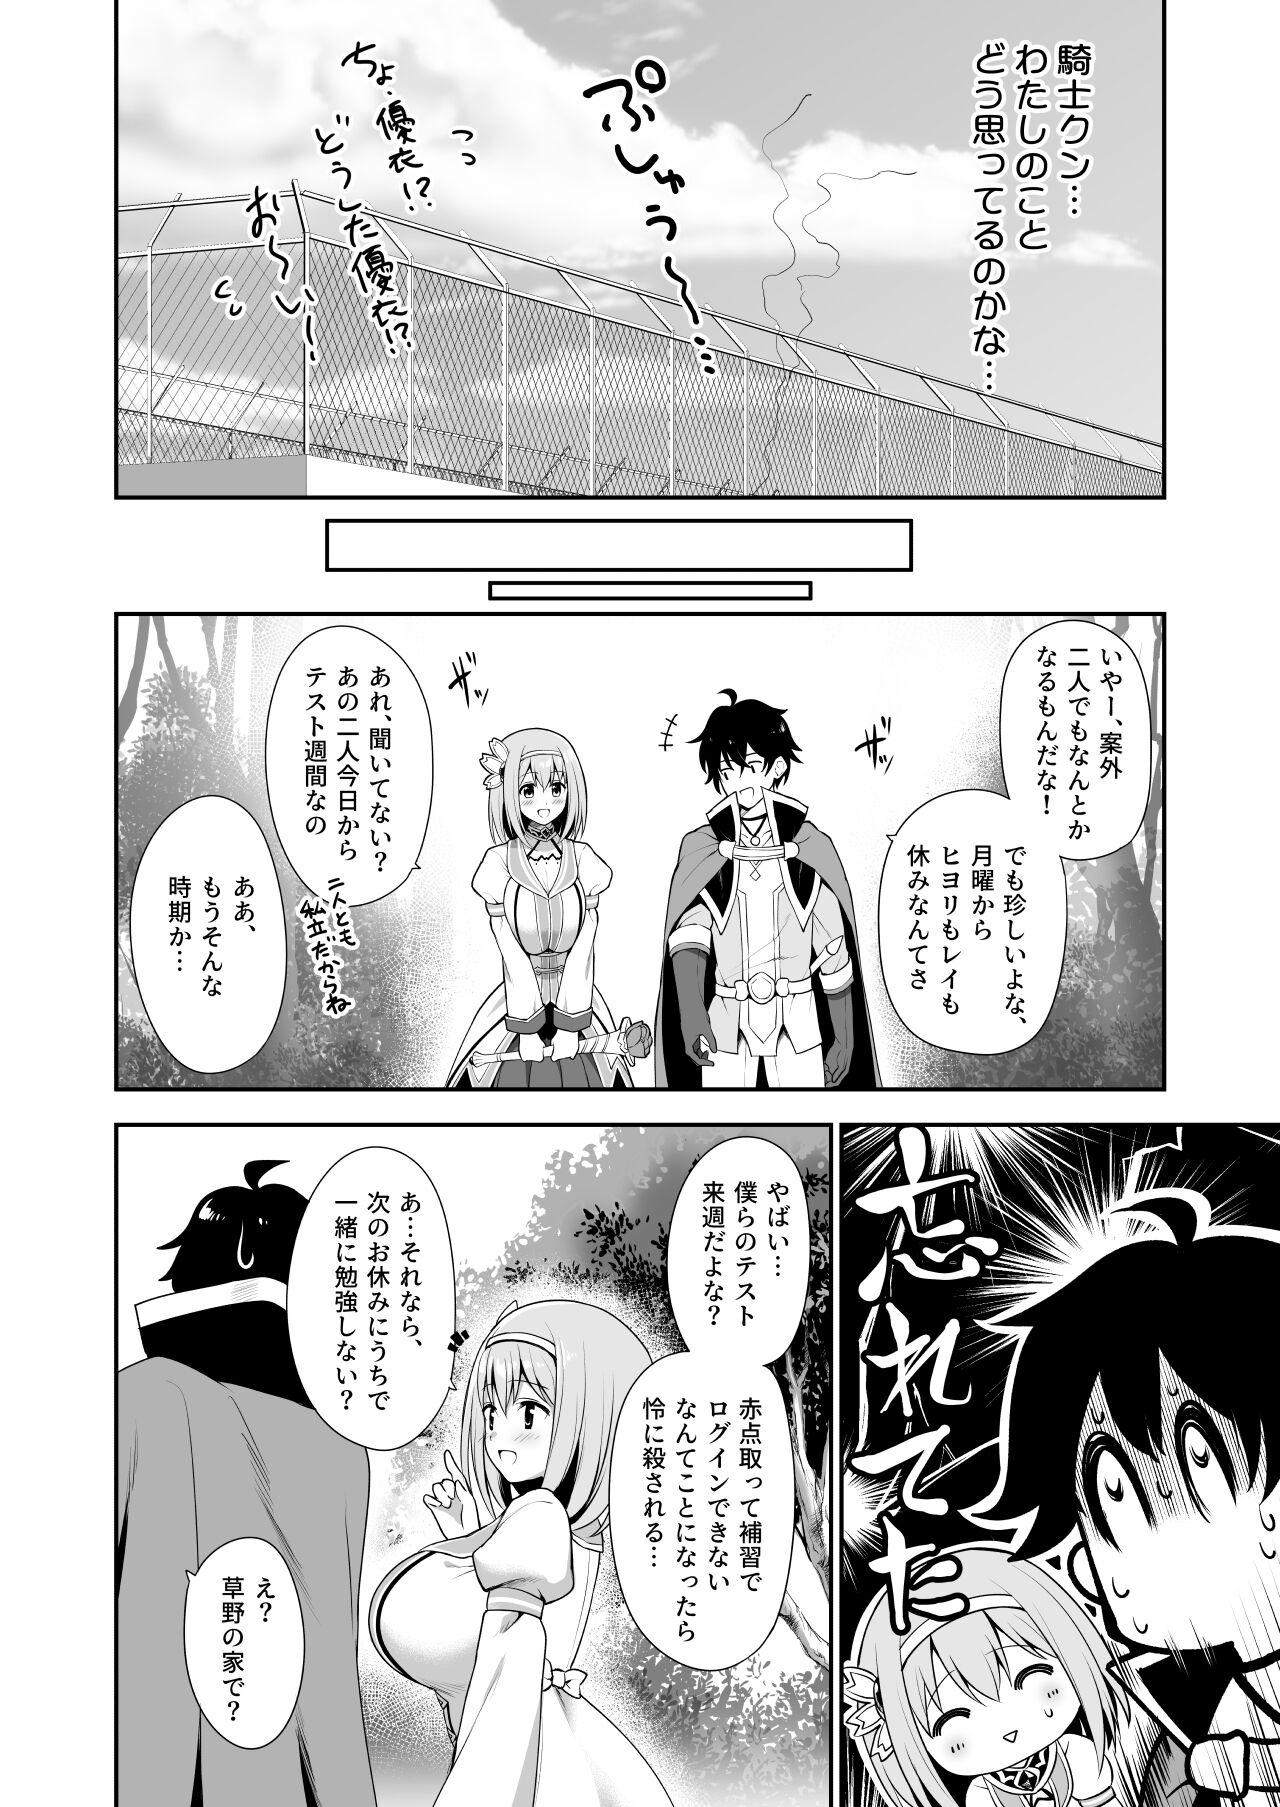 Sub 優衣コネ - Princess connect Escort - Page 8